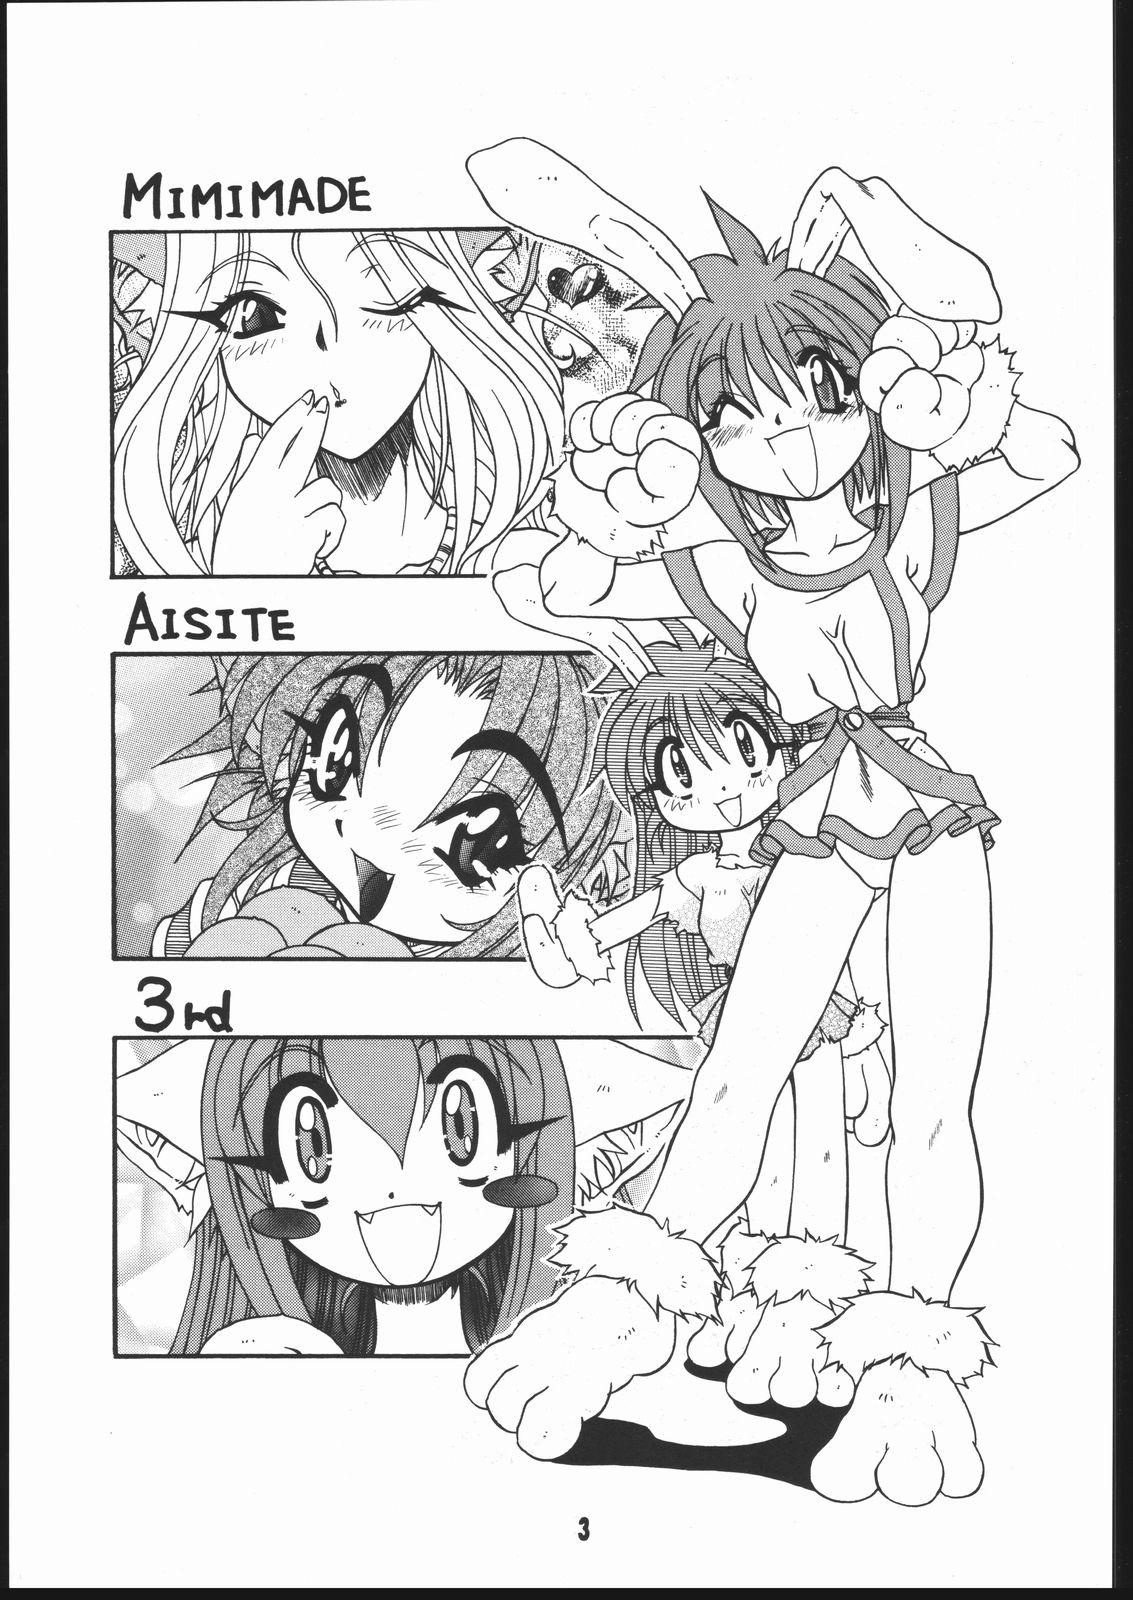 Super Mimi Made Aishite 3 White - Page 2